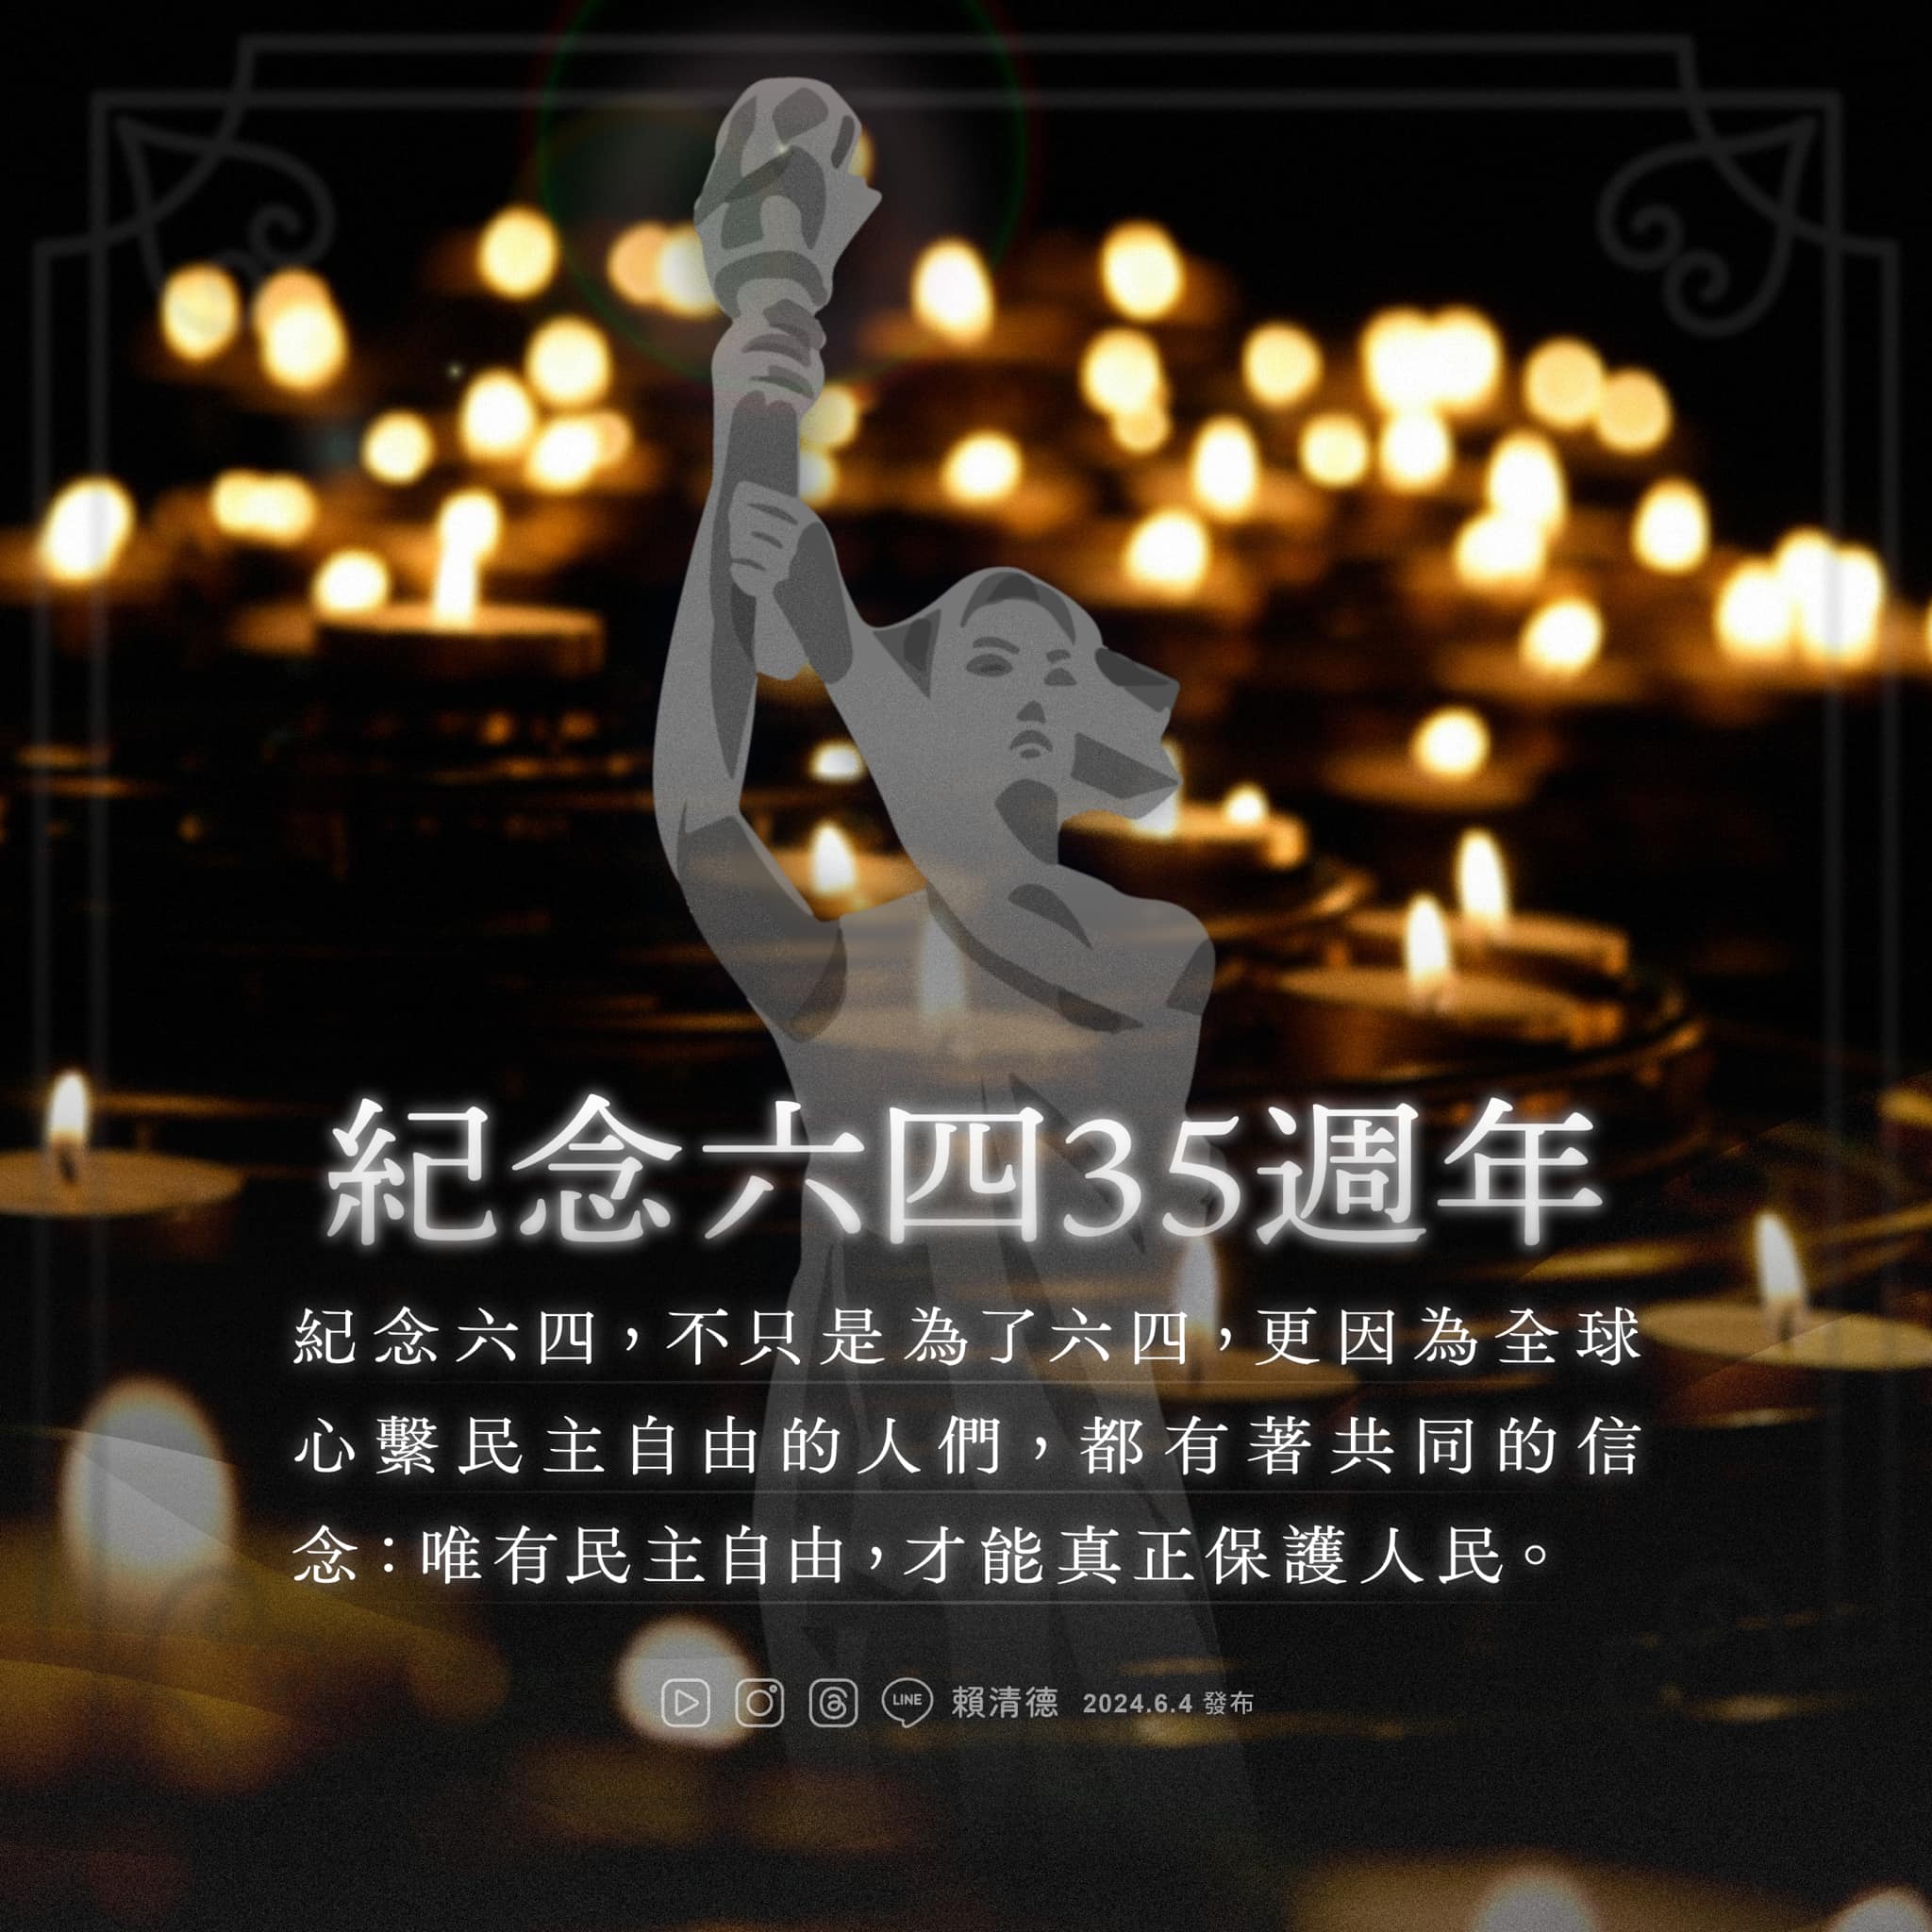 赖清德发文纪念六四   誓捍台湾民主”以自由回应专制”